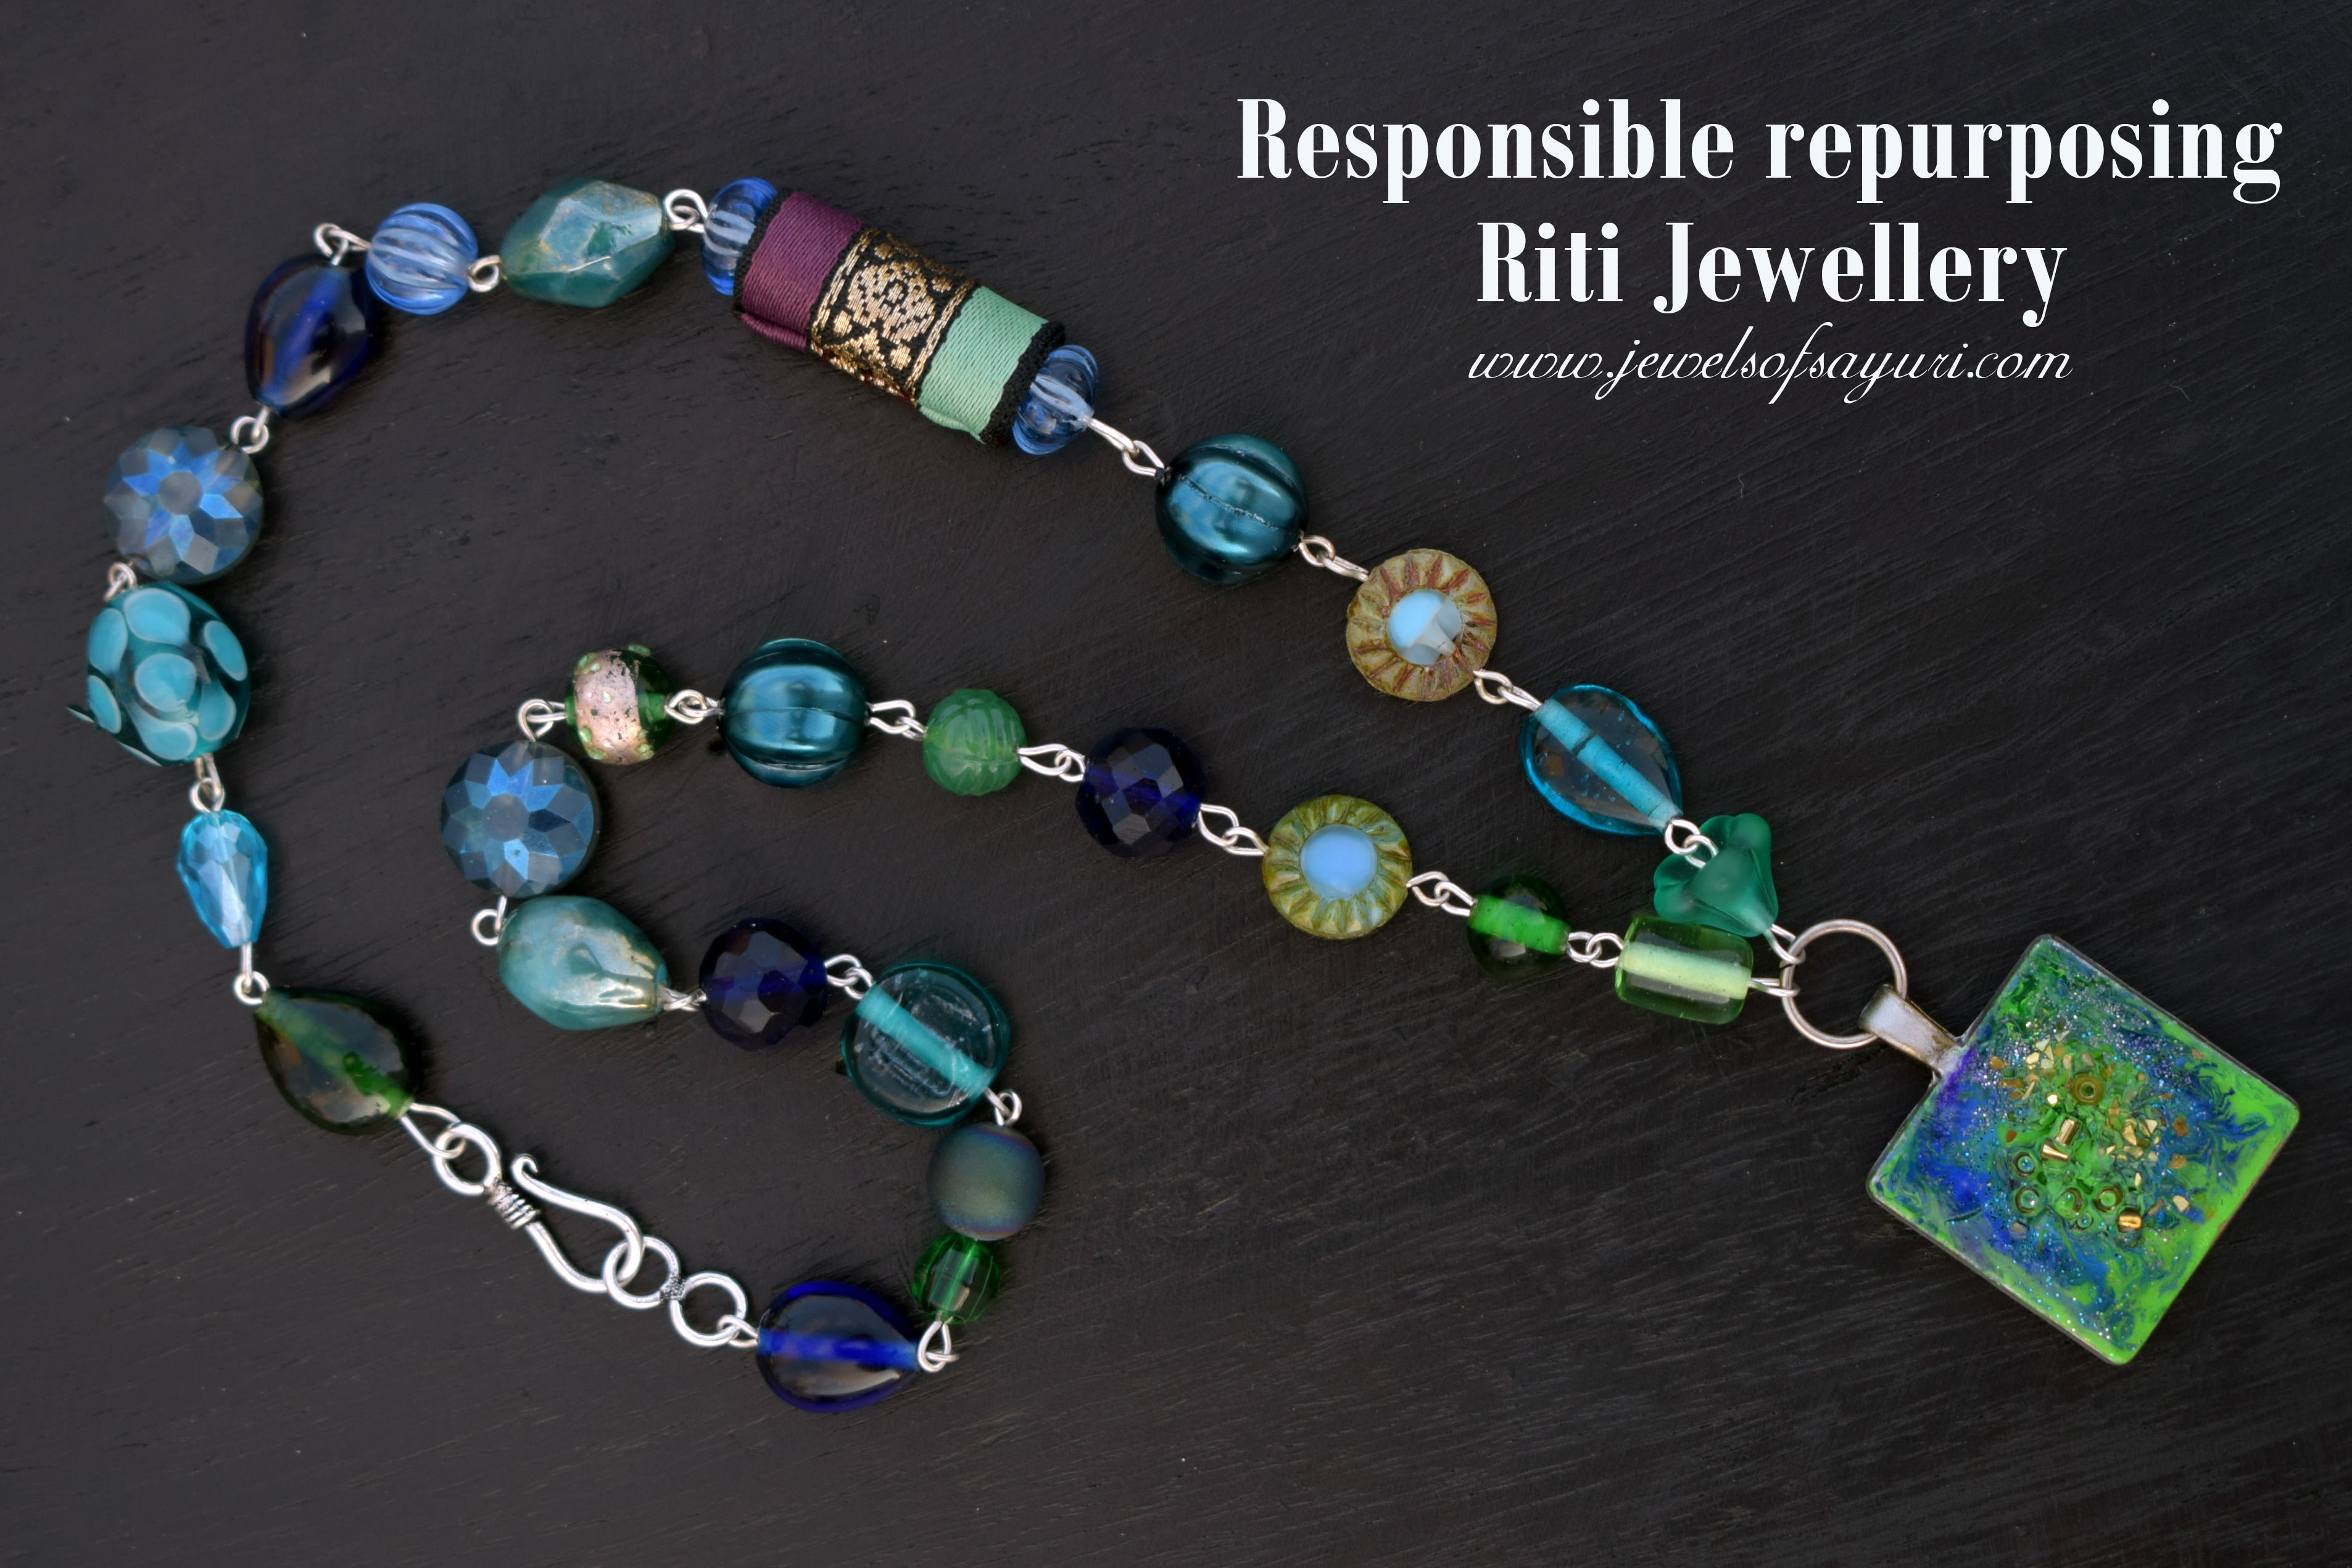 Responsible repurposing in Riti Jewellery